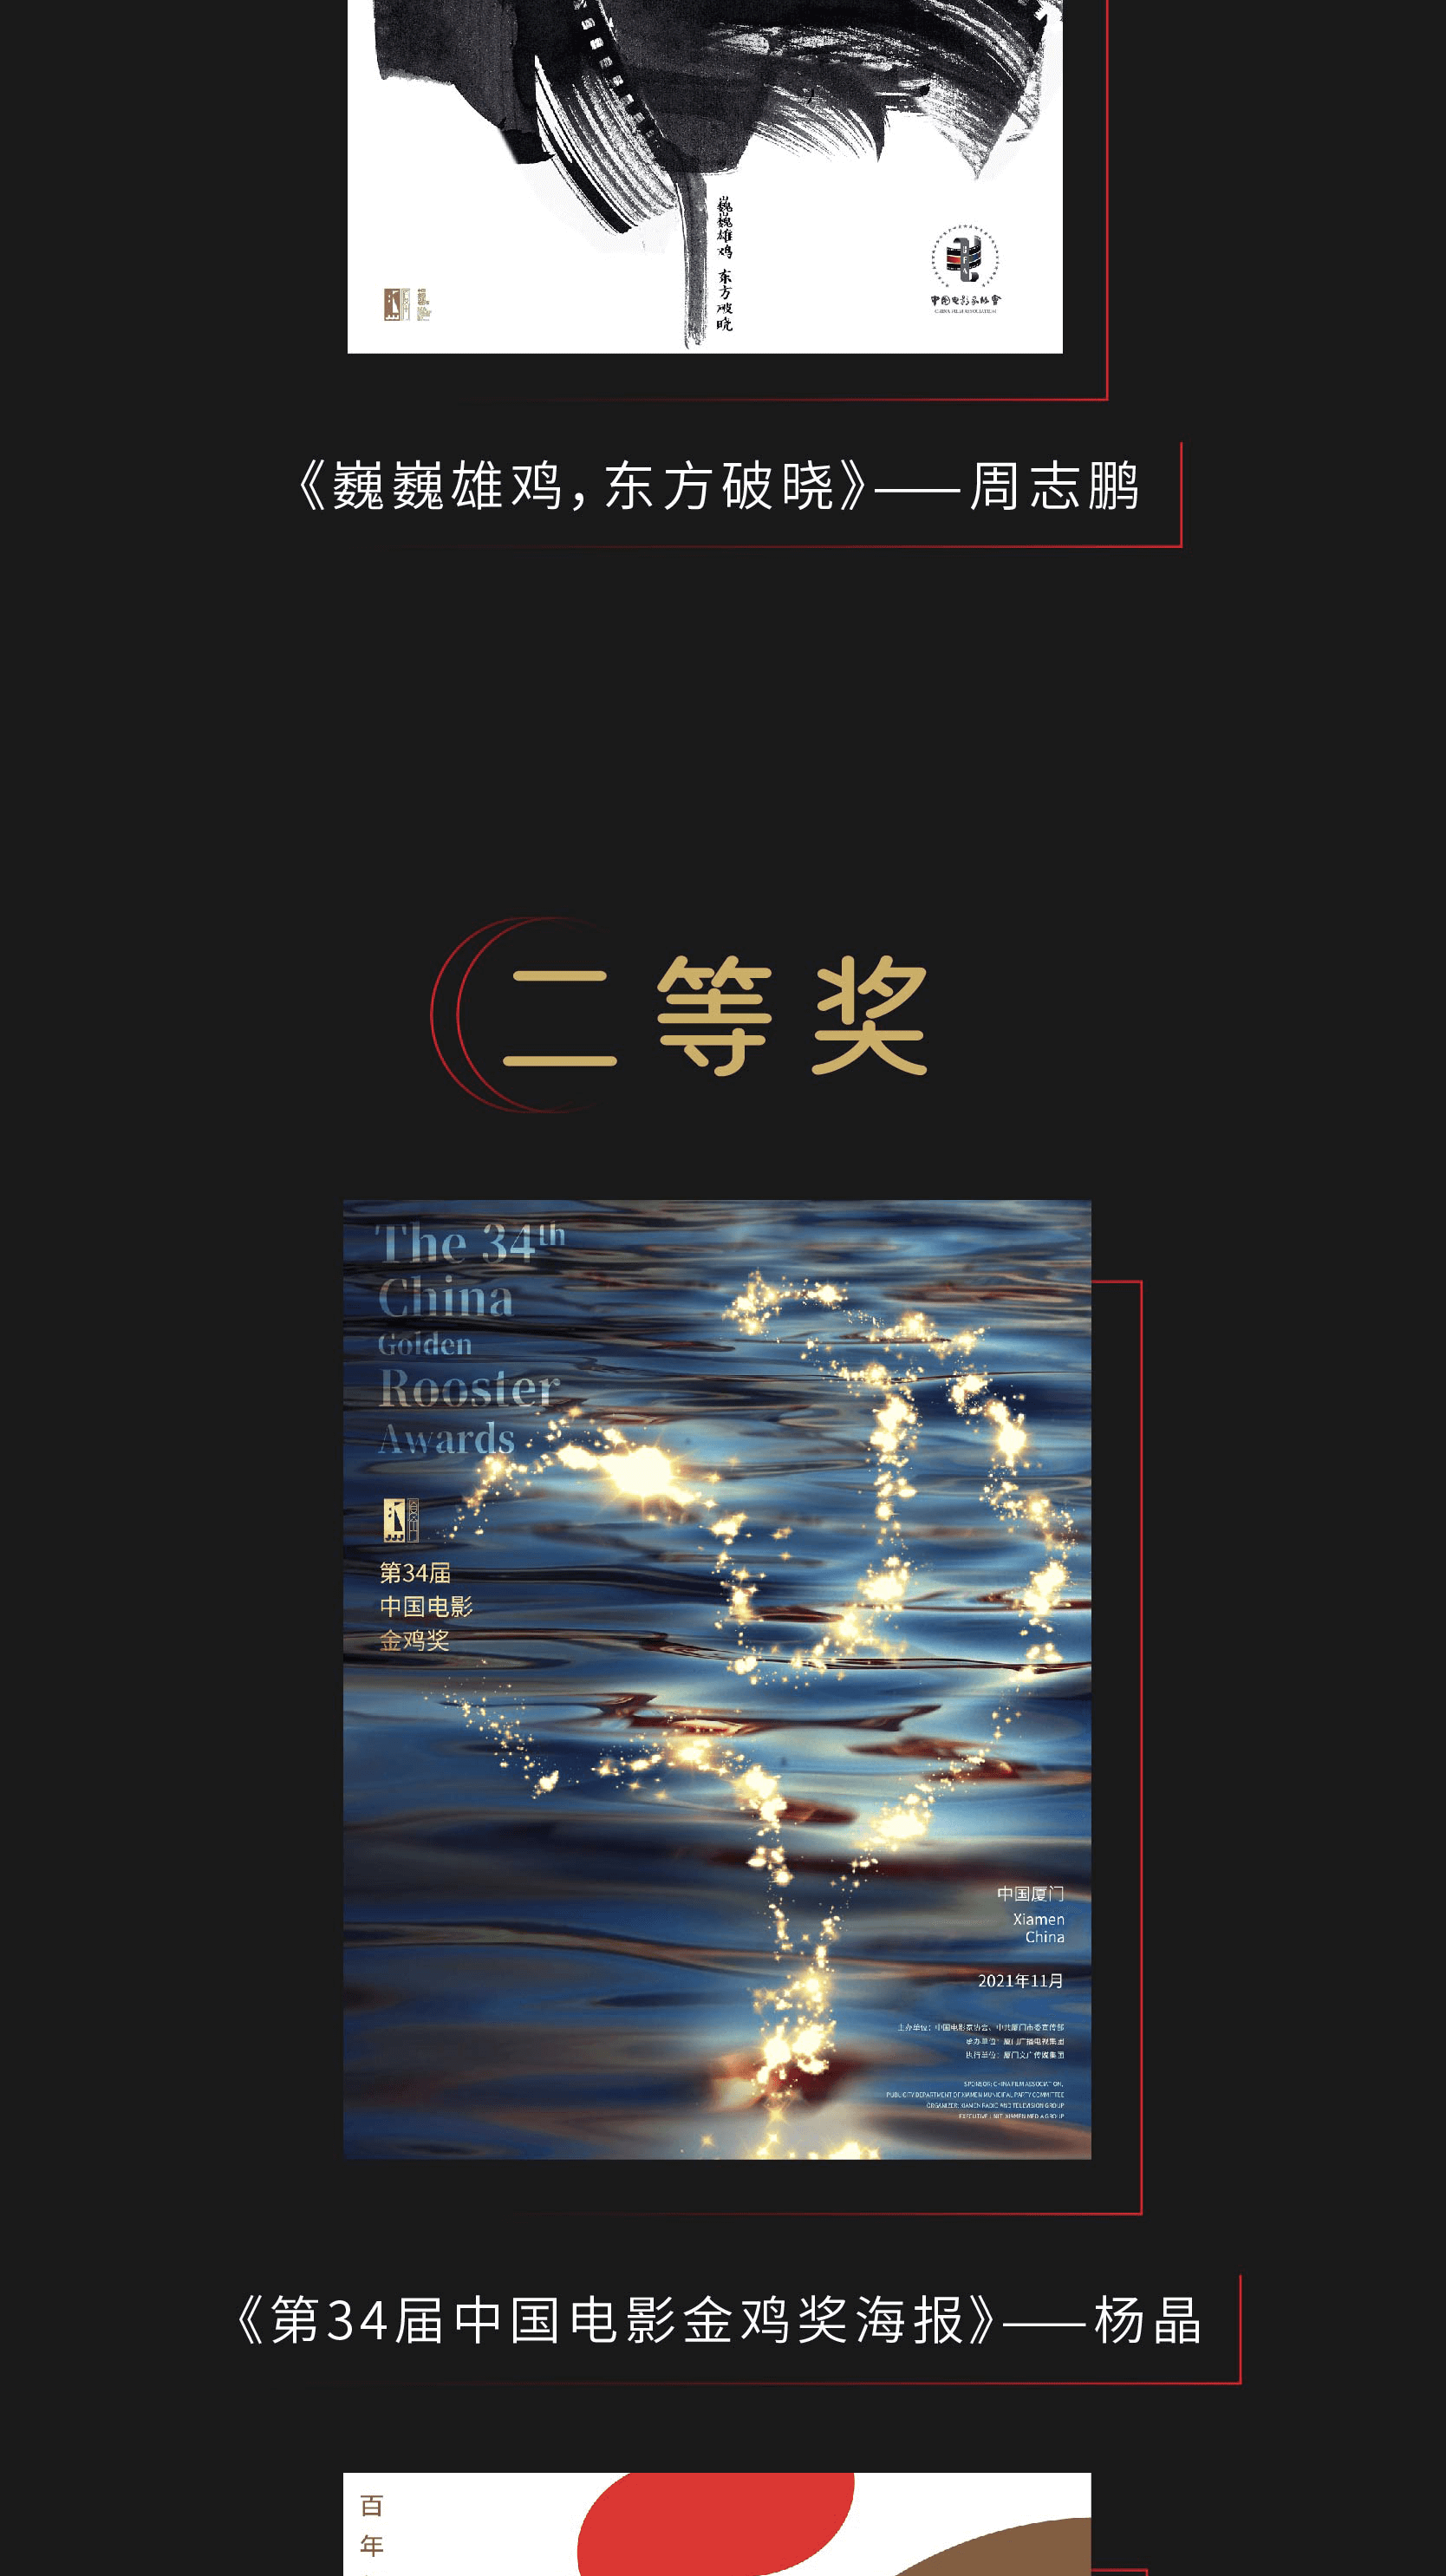 2021第34届中国电影金鸡奖海报设计大赛，获奖名单揭晓